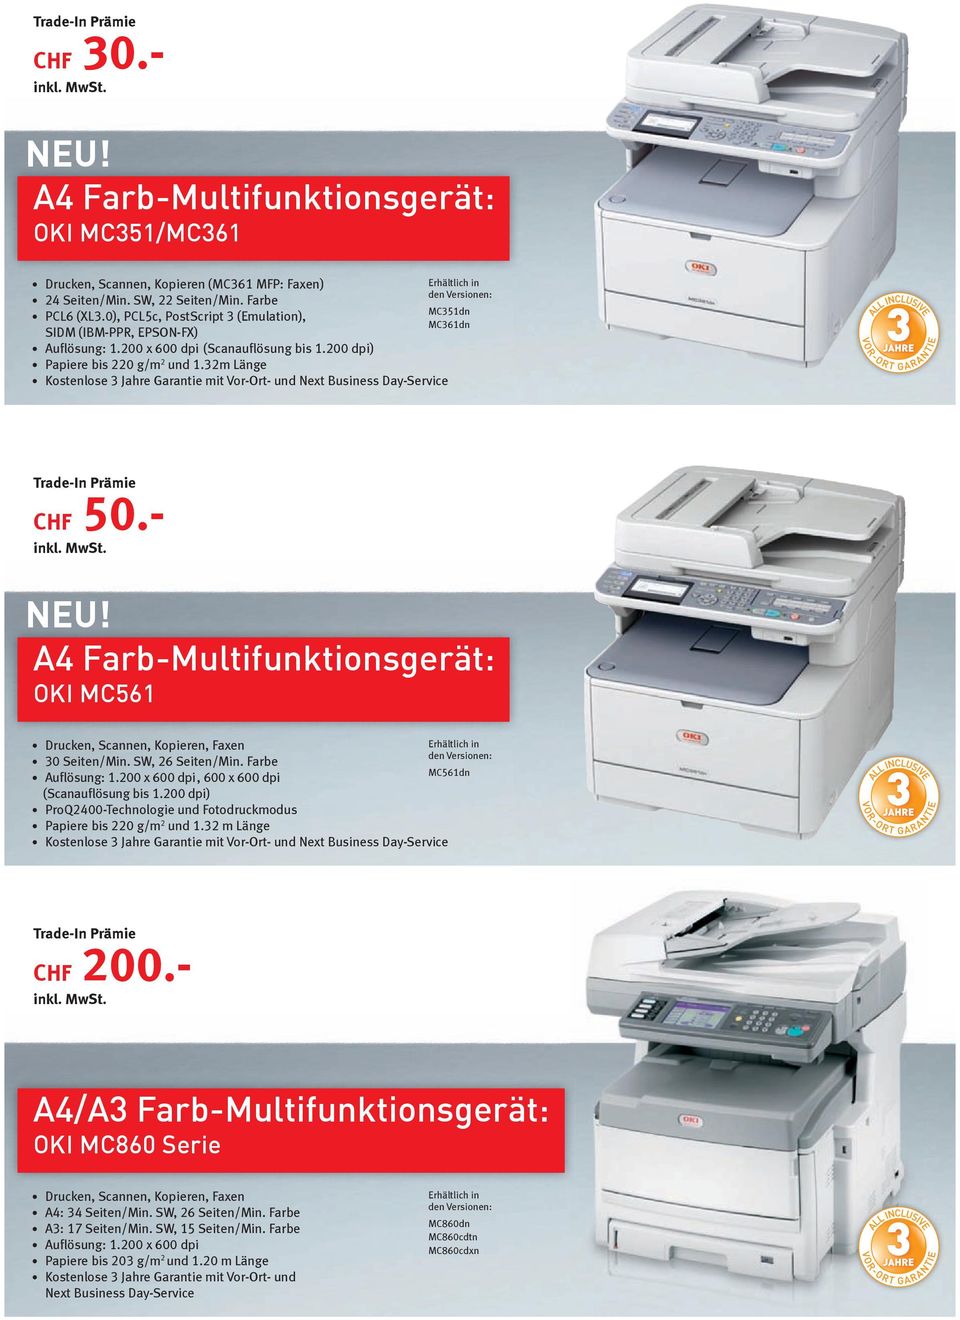 A4 Farb-Multifunktionsgerät: OKI MC561 Drucken, Scannen, Kopieren, Faxen 30 Seiten/Min. SW, 26 Seiten/Min. Farbe MC561dn Auflösung: 1.200 x 600 dpi, 600 x 600 dpi (Scanauflösung bis 1.